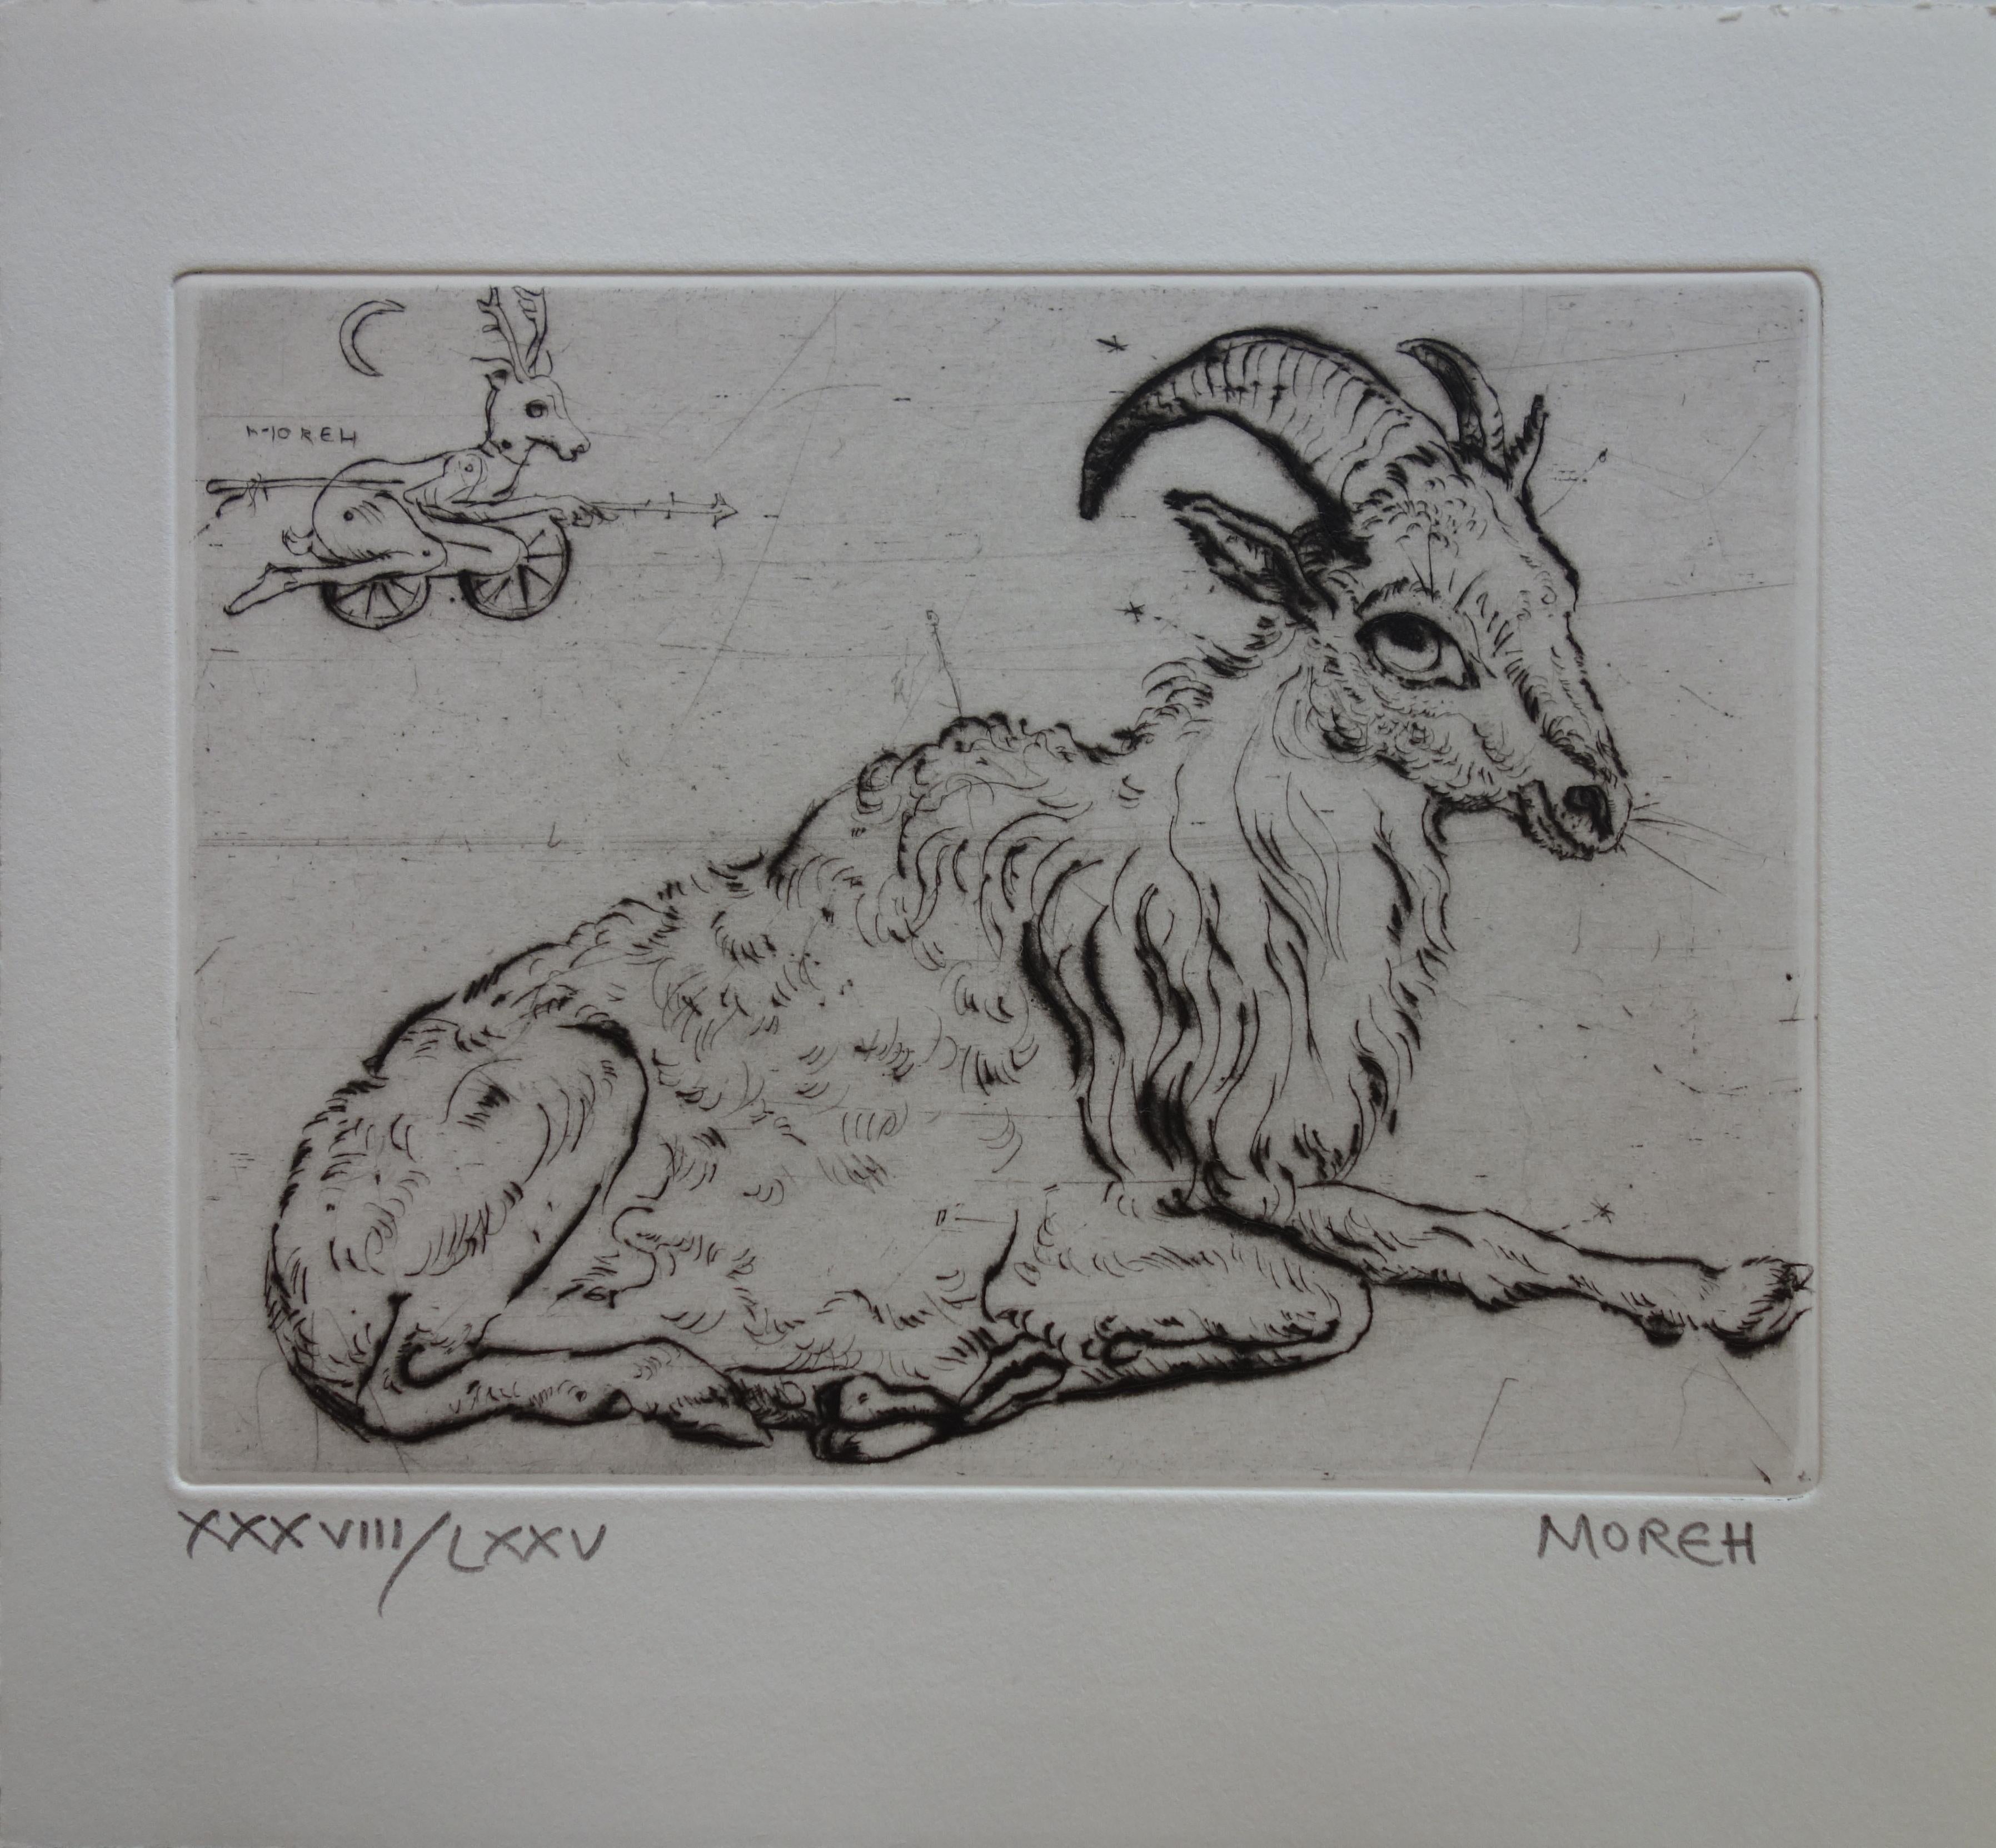 Mordecai Moreh Animal Print - Relaxing Billy Goat - Etching, Ltd 75 copies